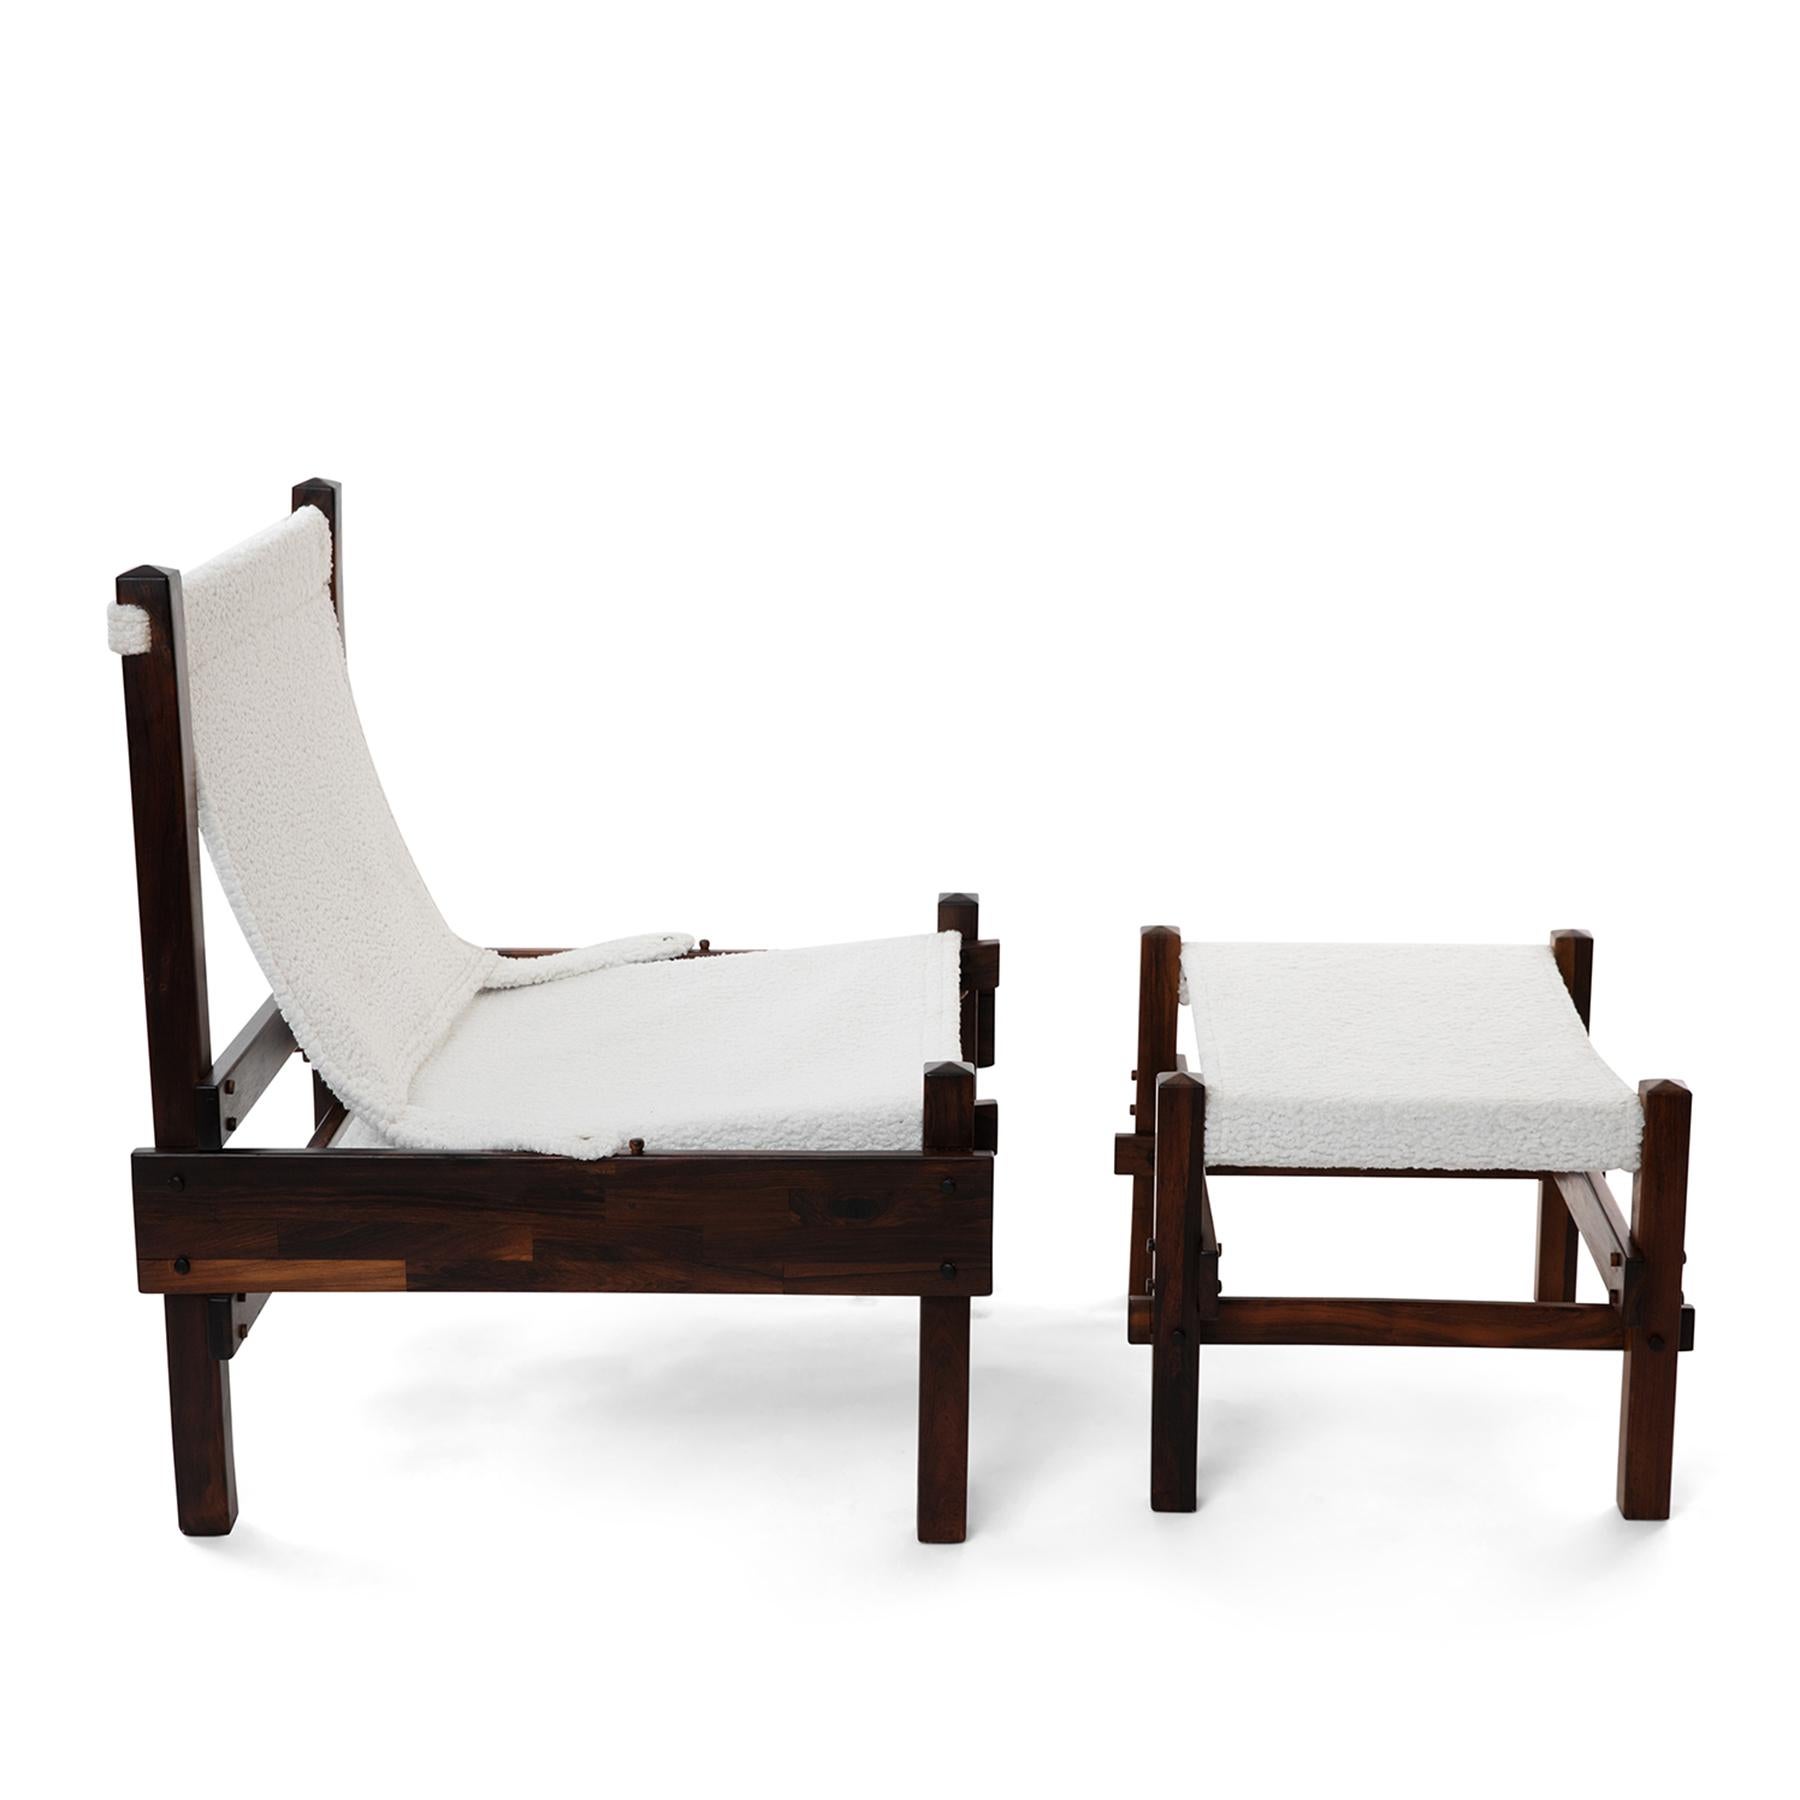 Sling Chair und Ottomane aus massivem Palisanderholz, Brasilien, Anfang der 1960er Jahre. Dieses Exemplar hat ein wunderschön gemasertes Gestell aus gestapeltem Palisanderholz und wurde neu mit einem geschmeidigen Schafslederimitatbezug gepolstert.